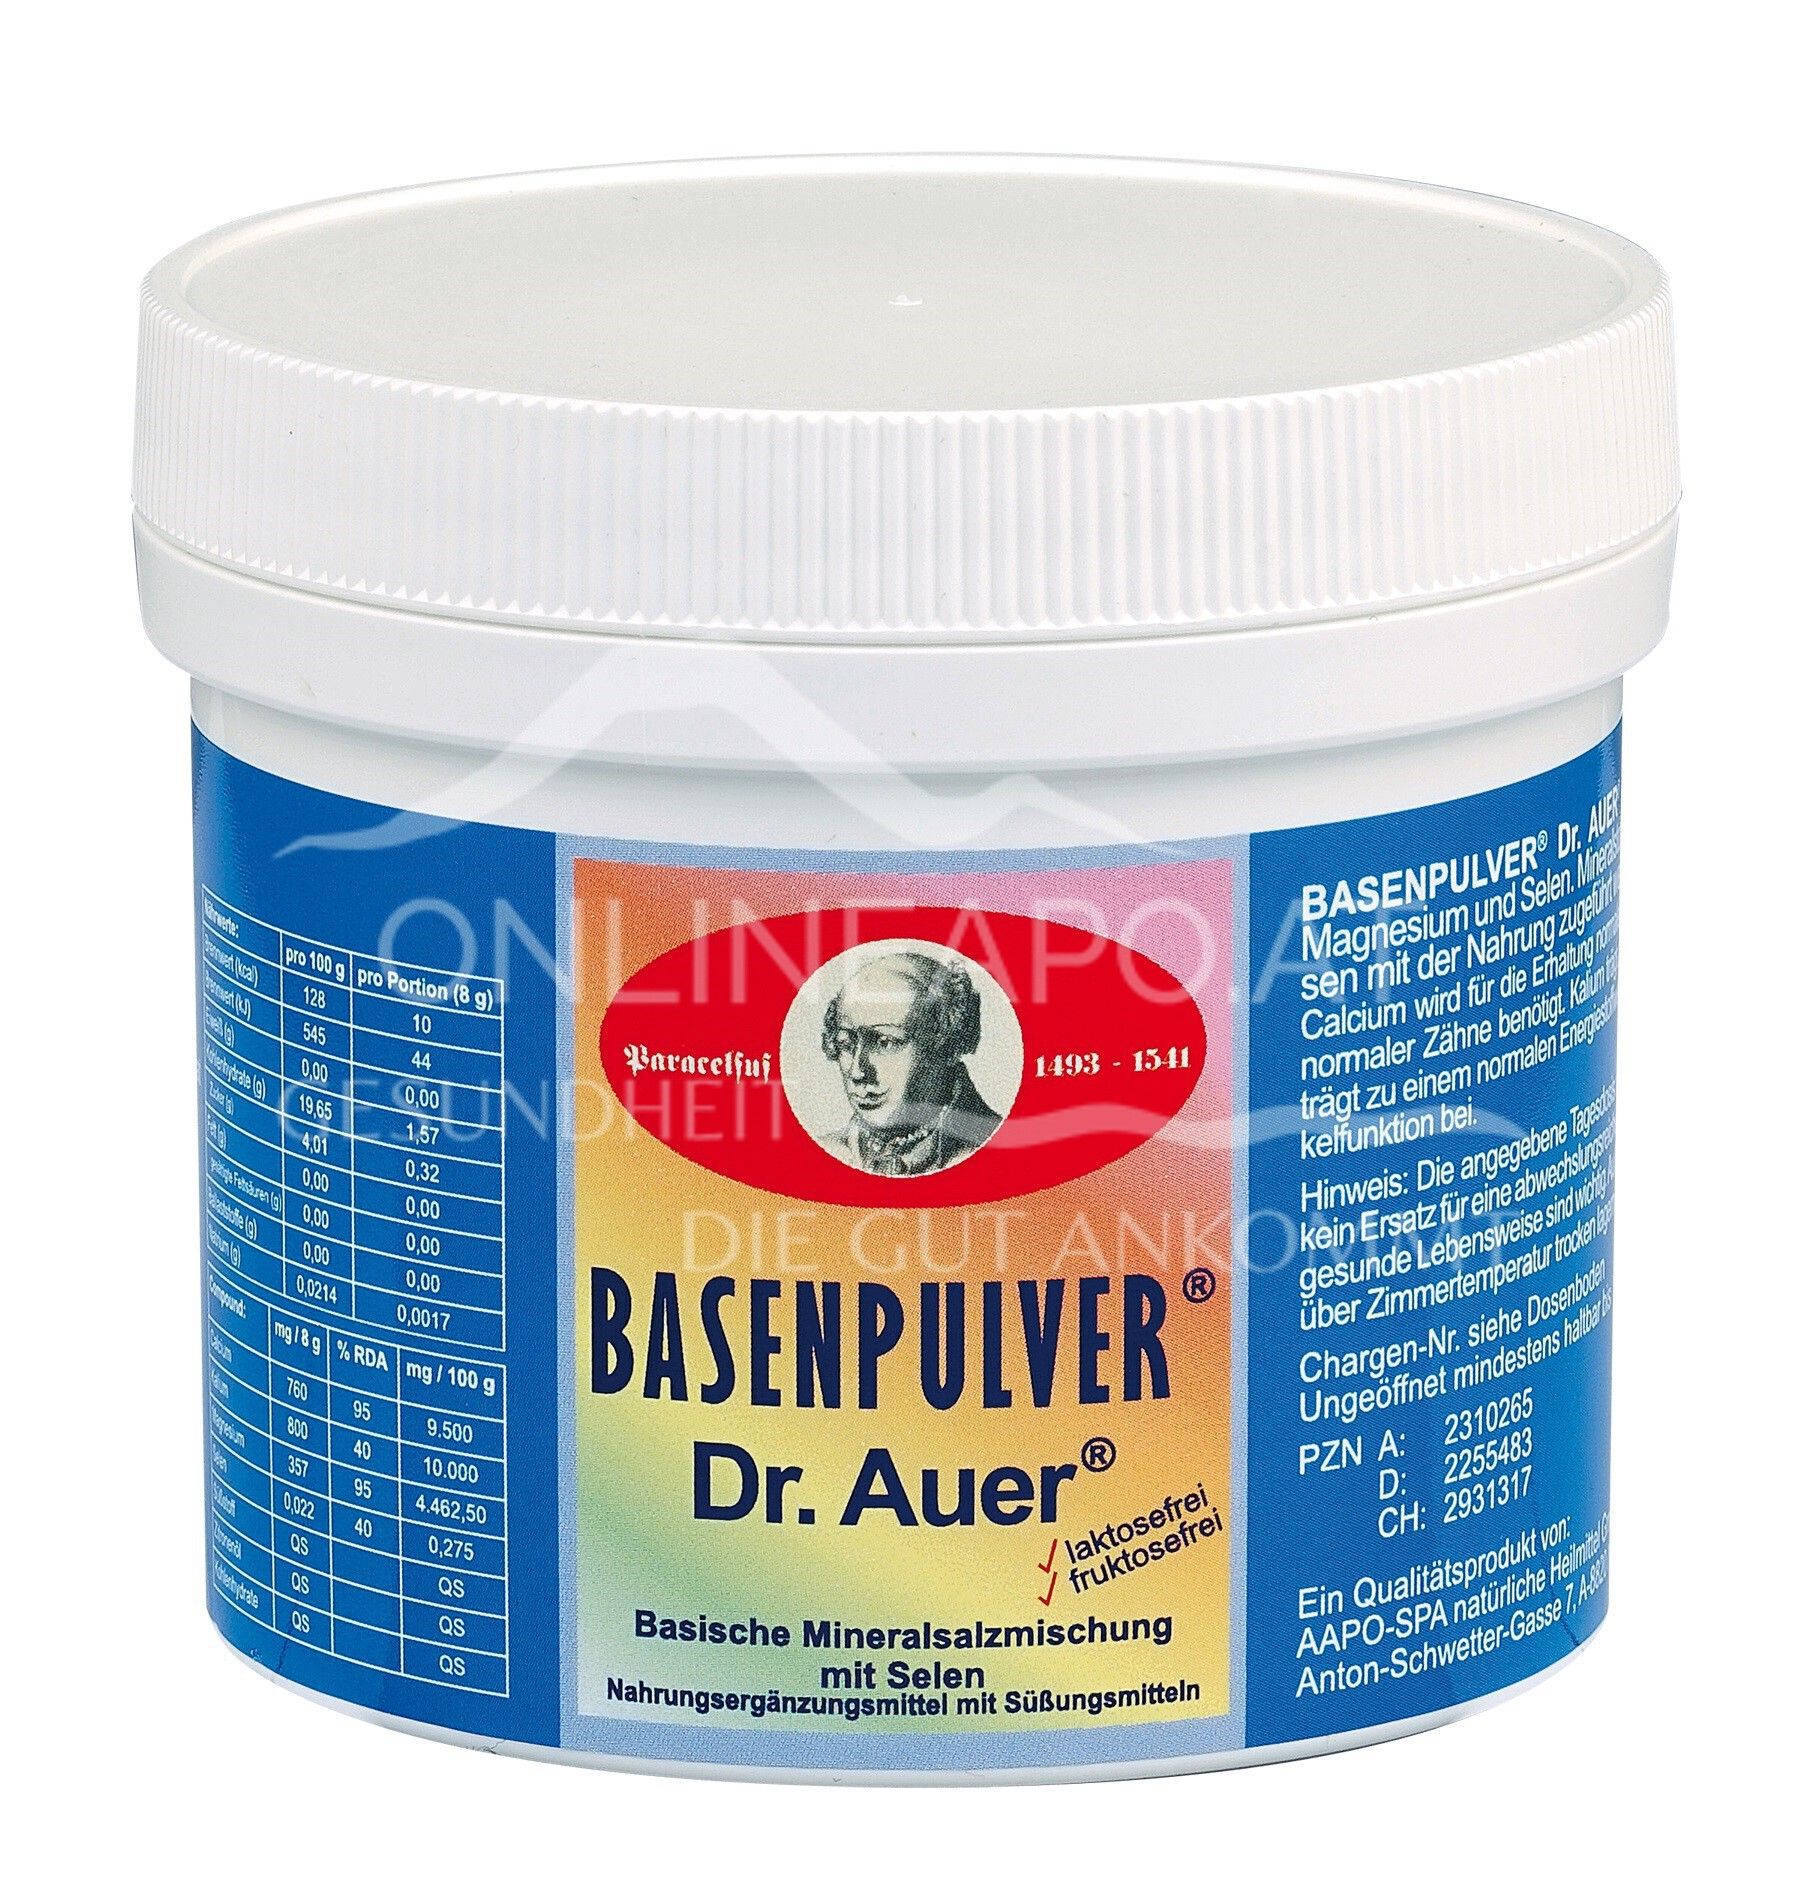 BASENPULVER® Dr. Auer